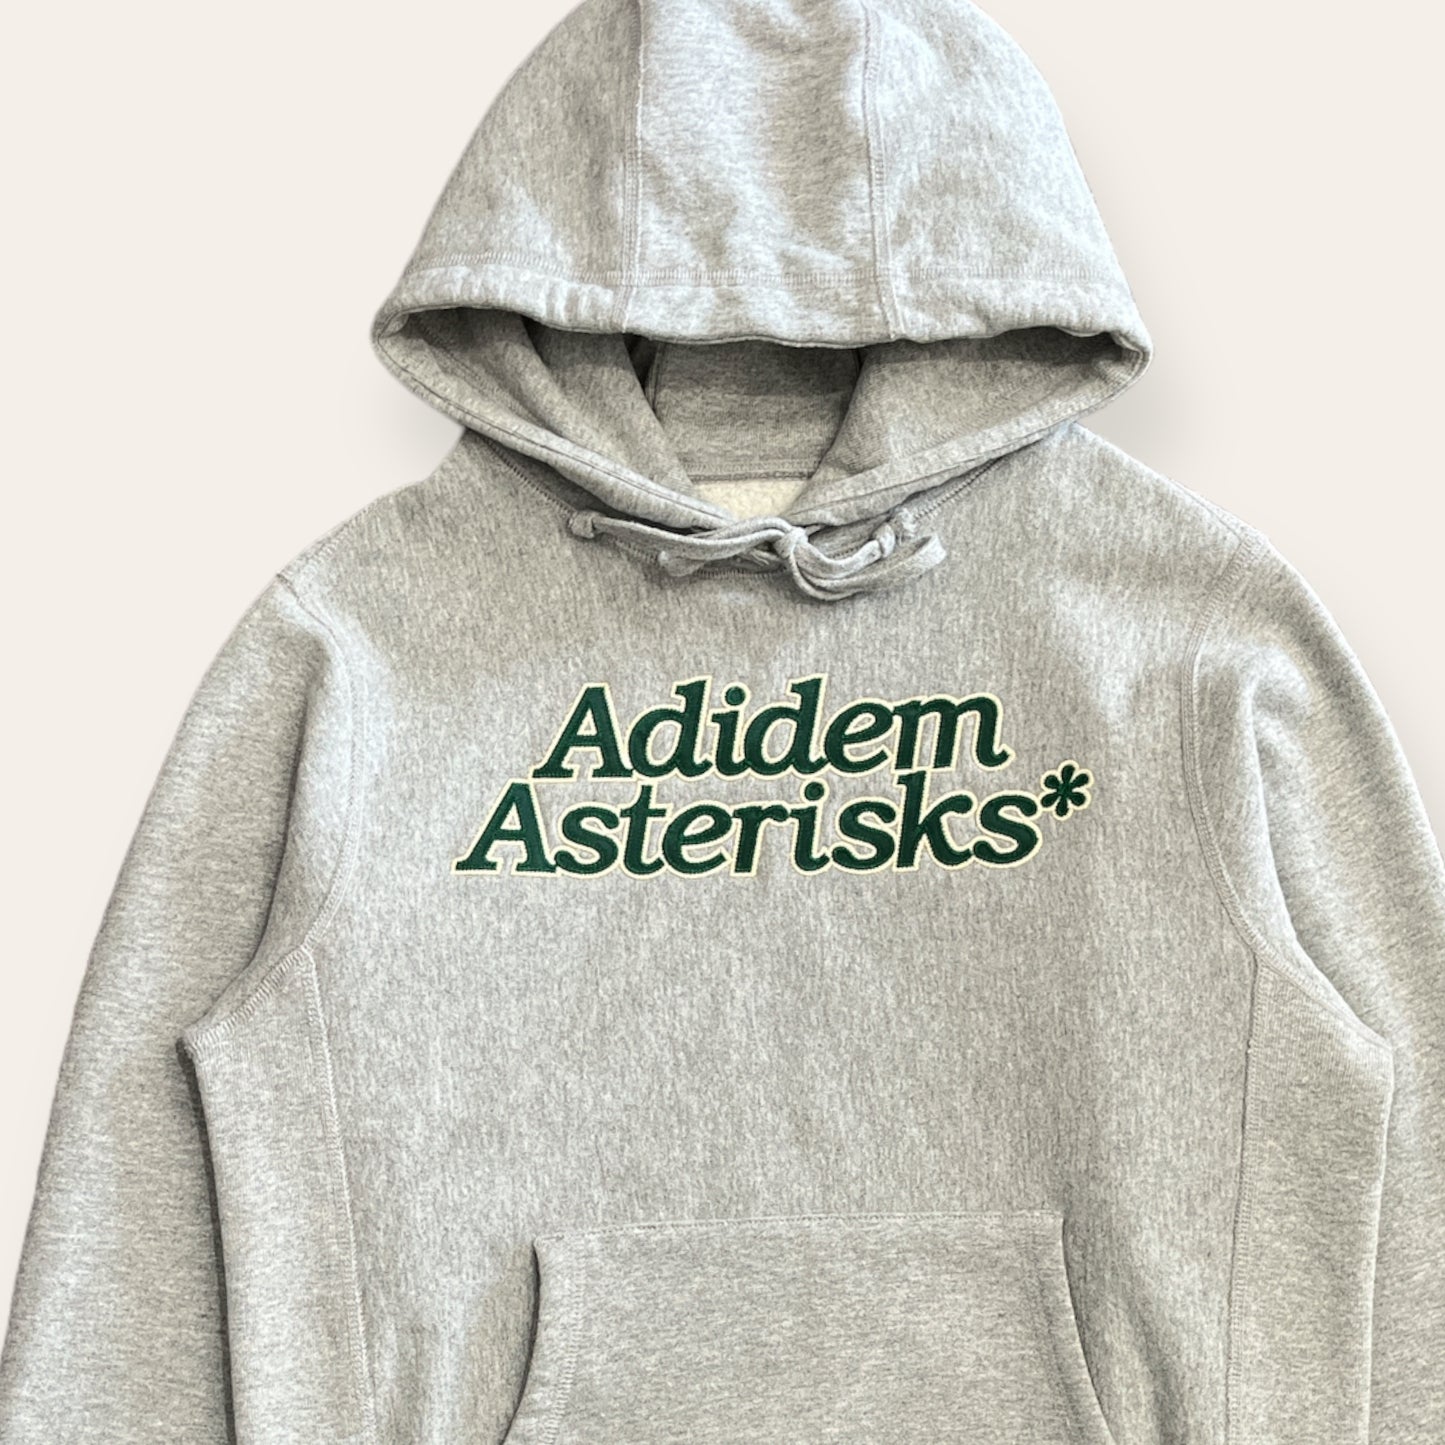 Adidem Asterisks* Grey Hoodie Size XS